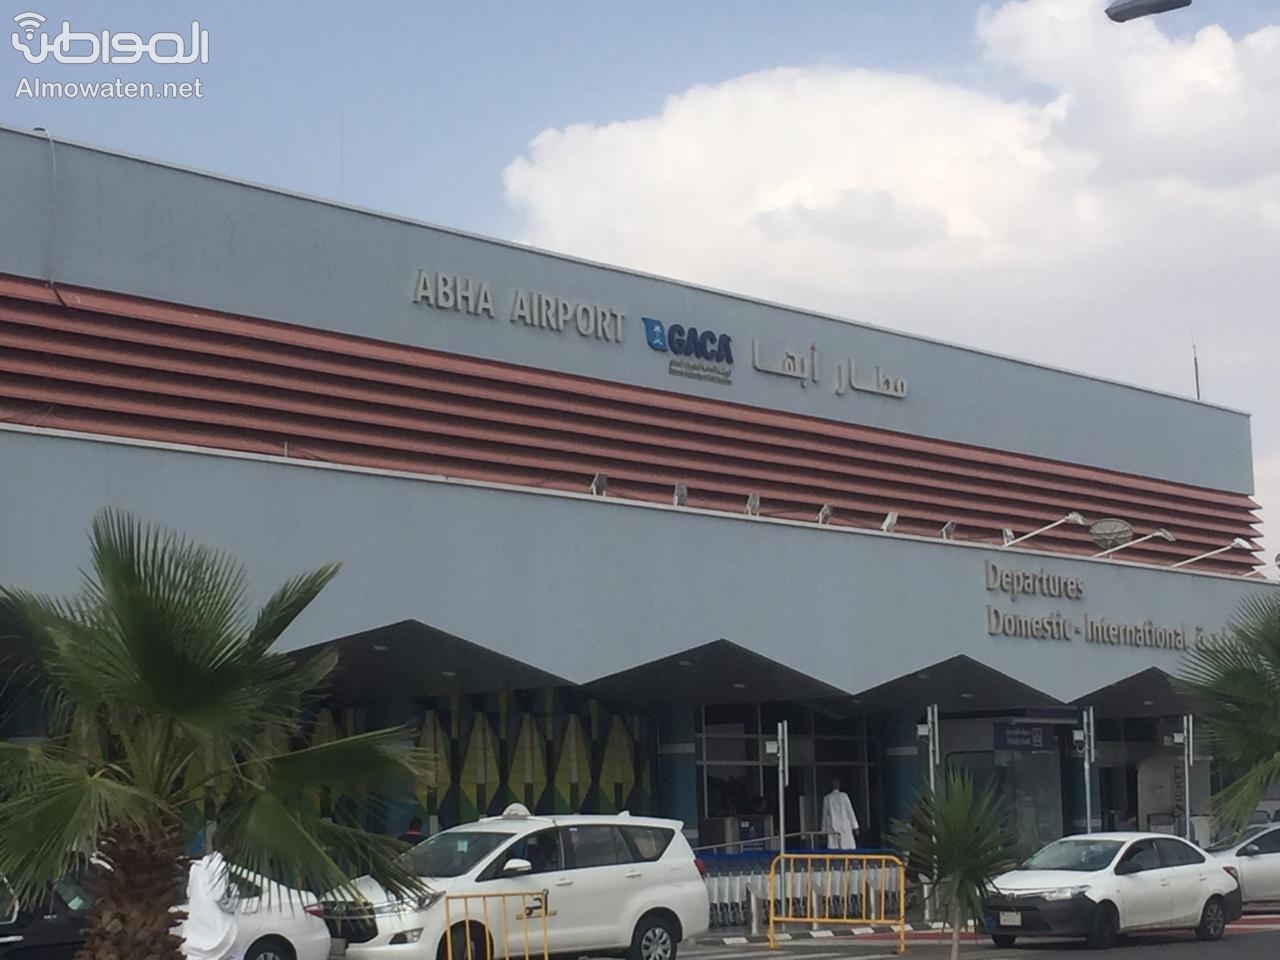 قادة الكويت في برقيات إلى الملك سلمان : استهداف مطار أبها يتنافى مع الشرائع والقيم الإنسانية كافة